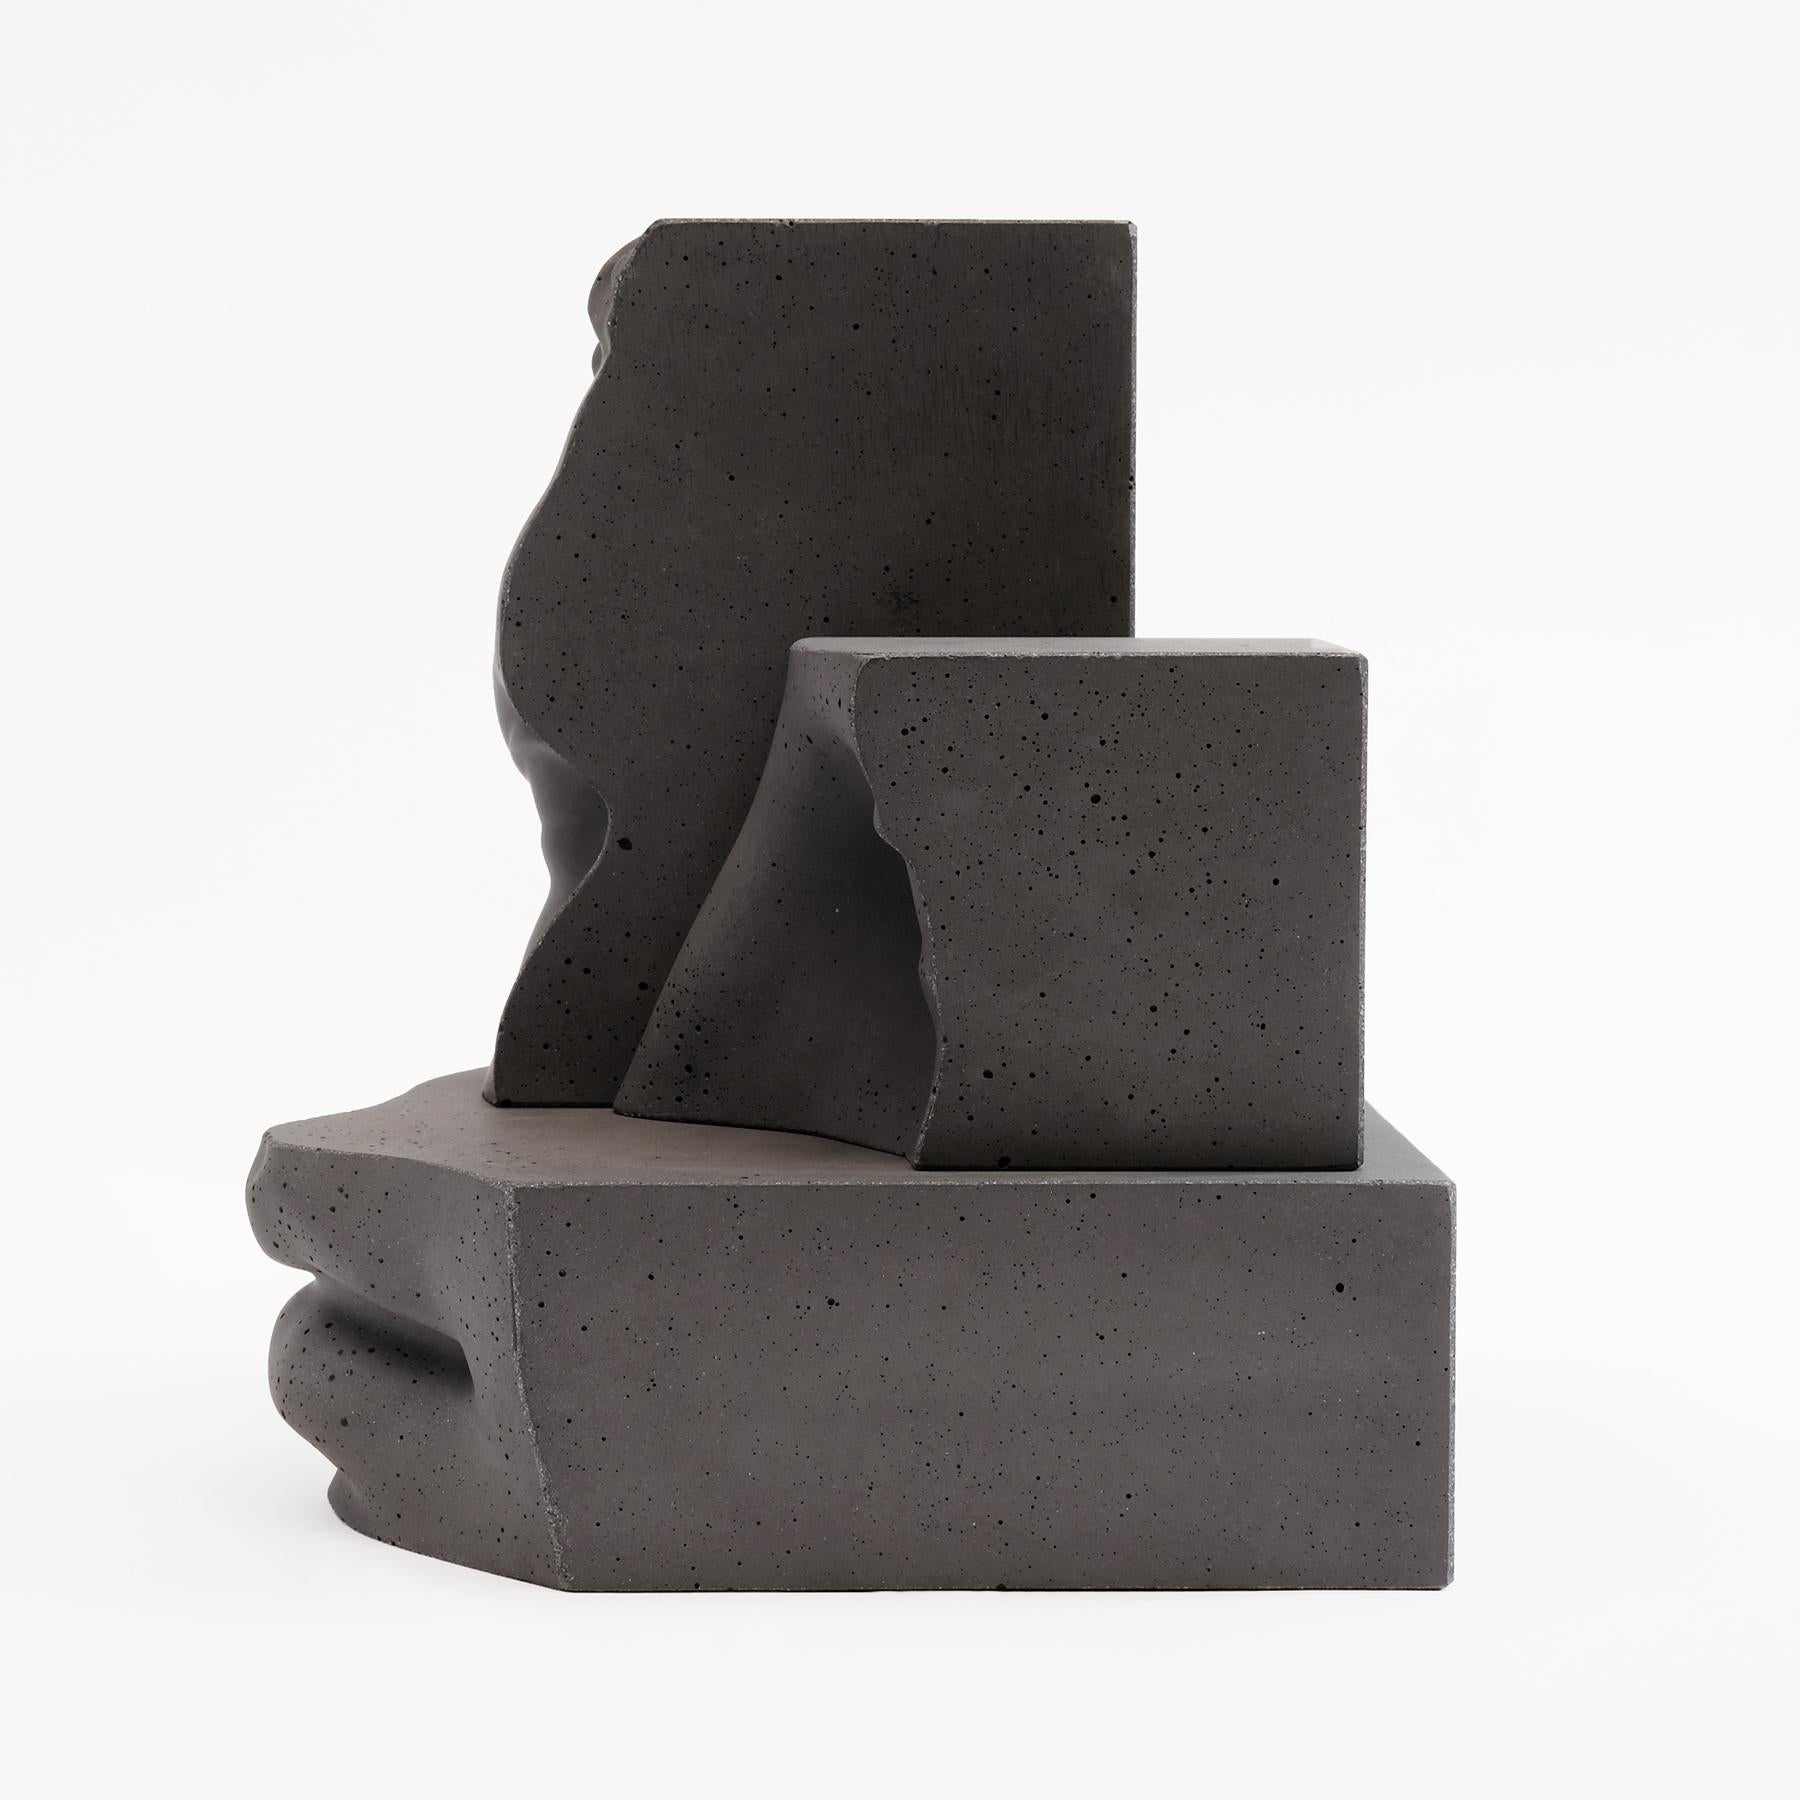 Italian Hermes - Dark Grey - Design Sculpture Paolo Giordano Concrete Cement Cast For Sale